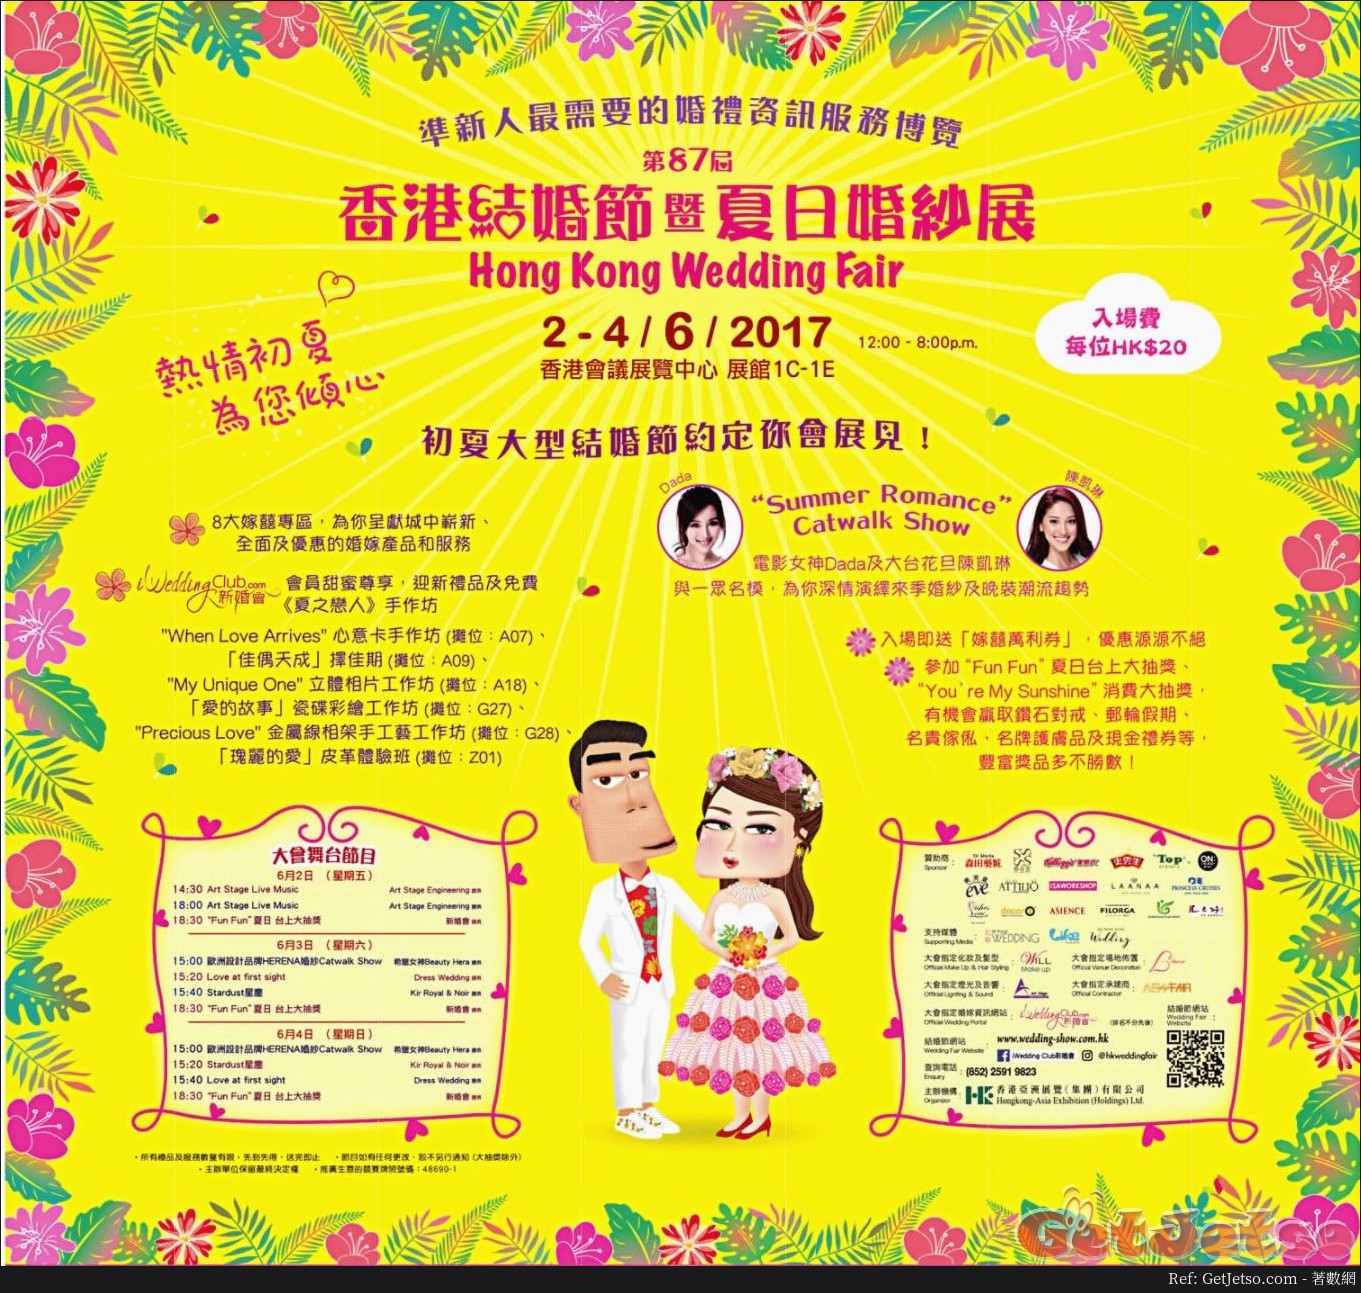 香港結婚節及夏日婚紗展(17年6月2-4日)圖片1